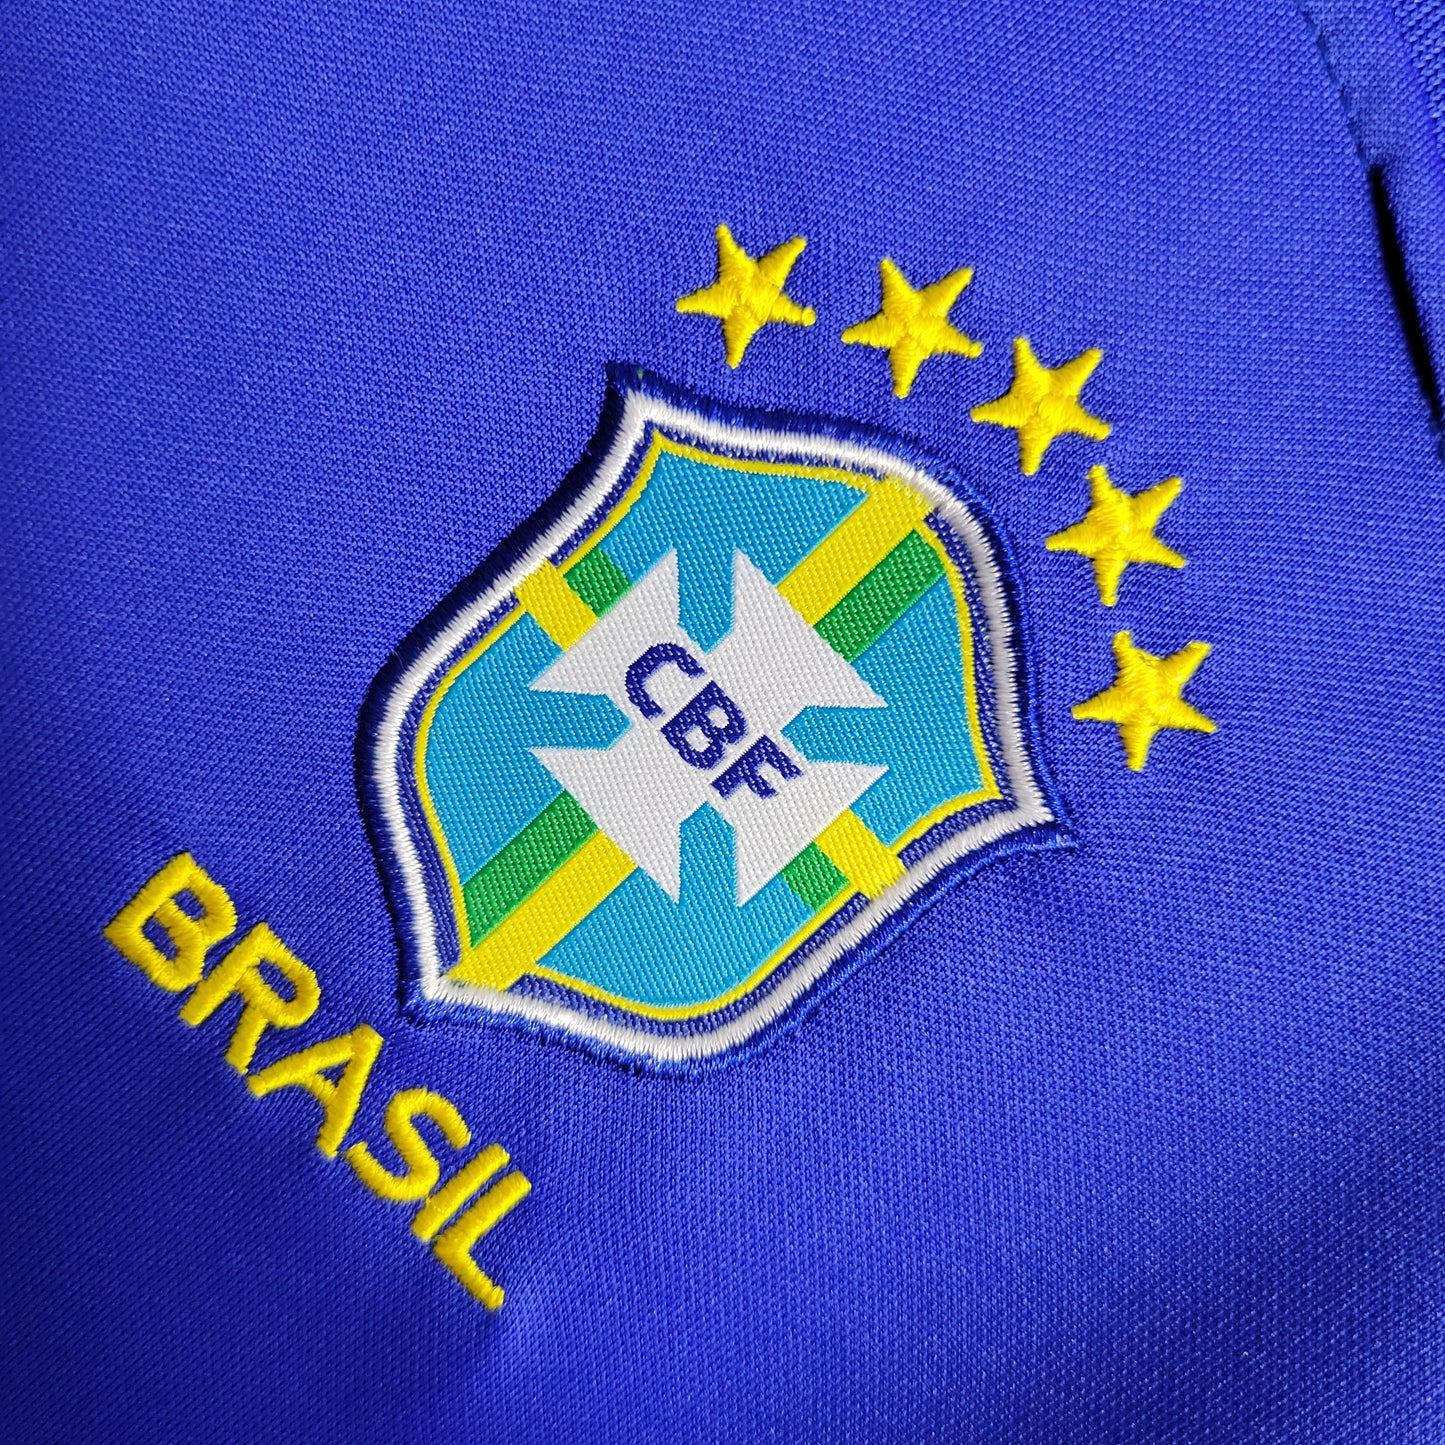 Conjunto Infantil Brasil Away Copa do Mundo 2022